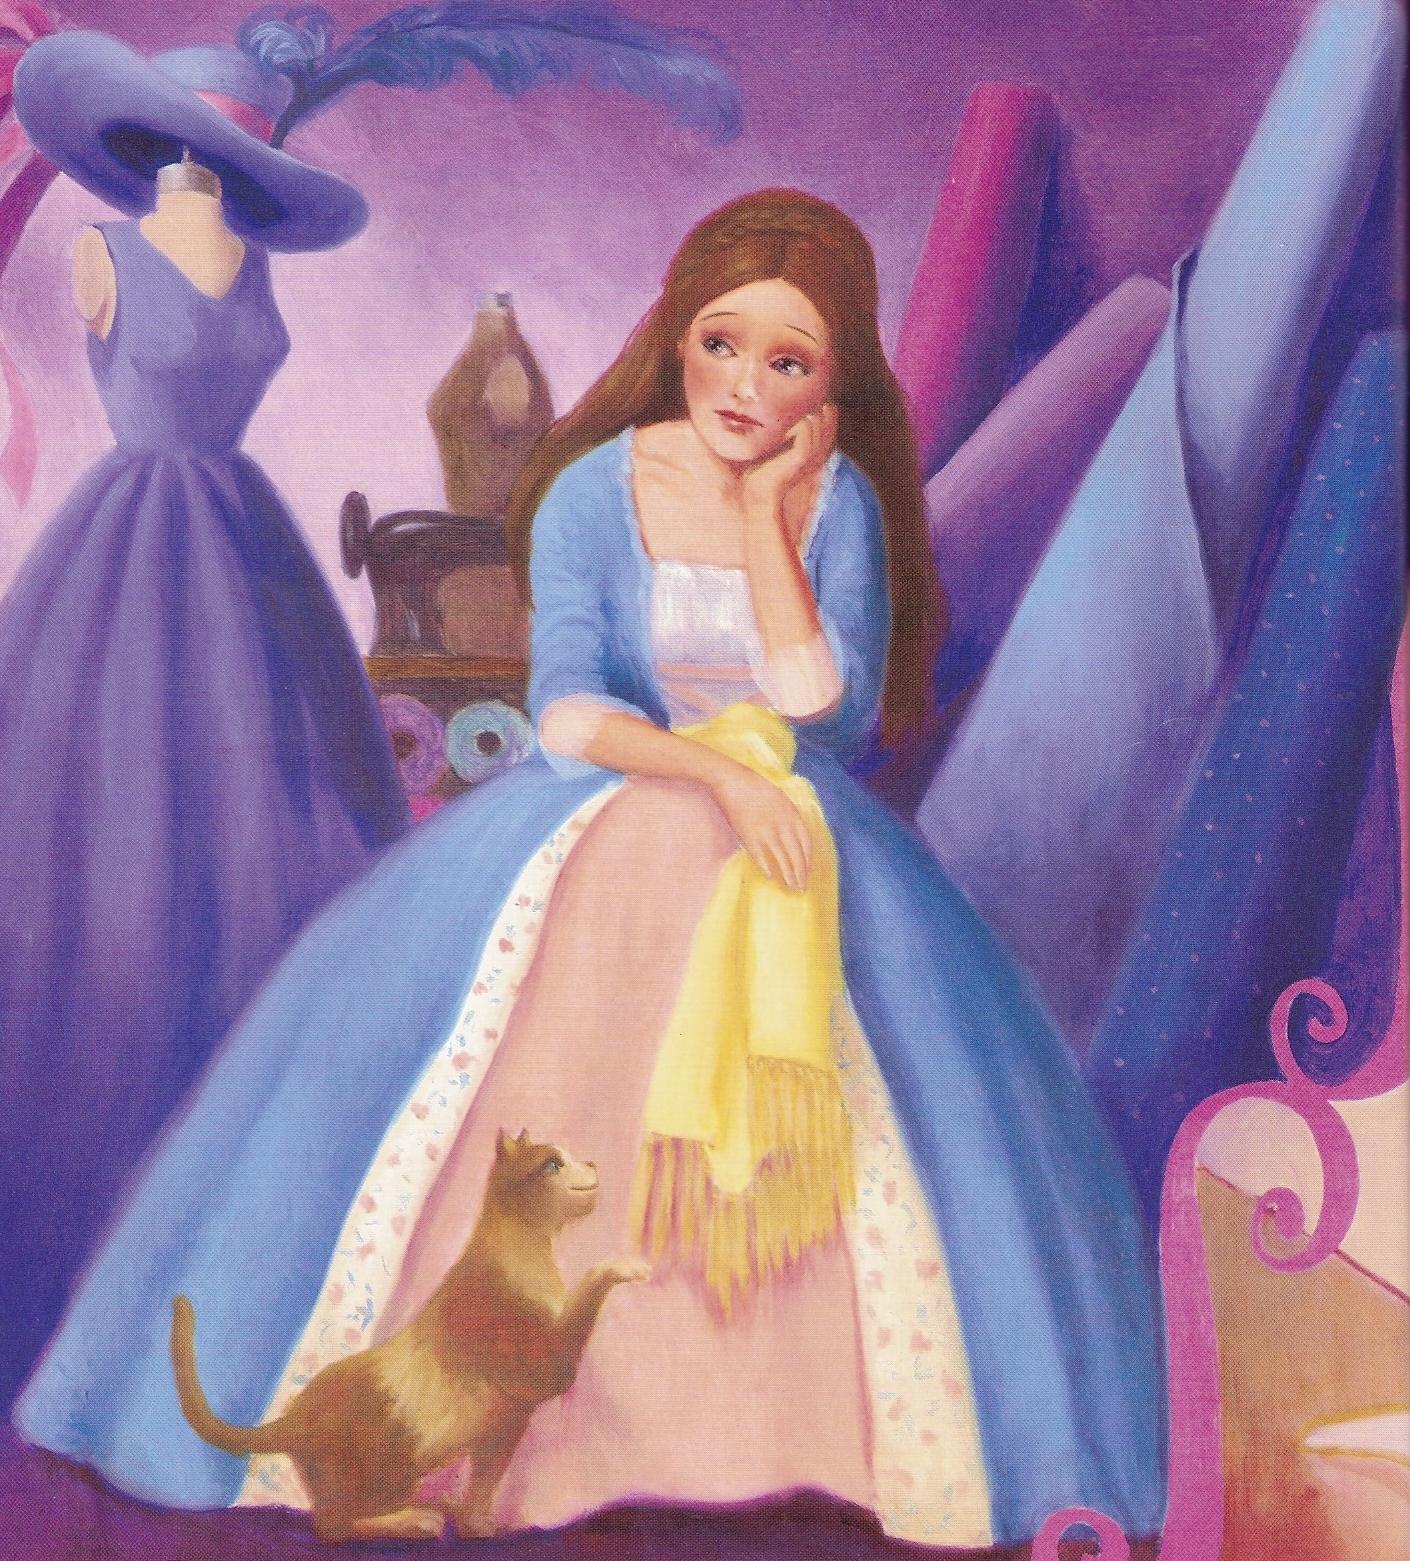 barbie princess and the pauper castle